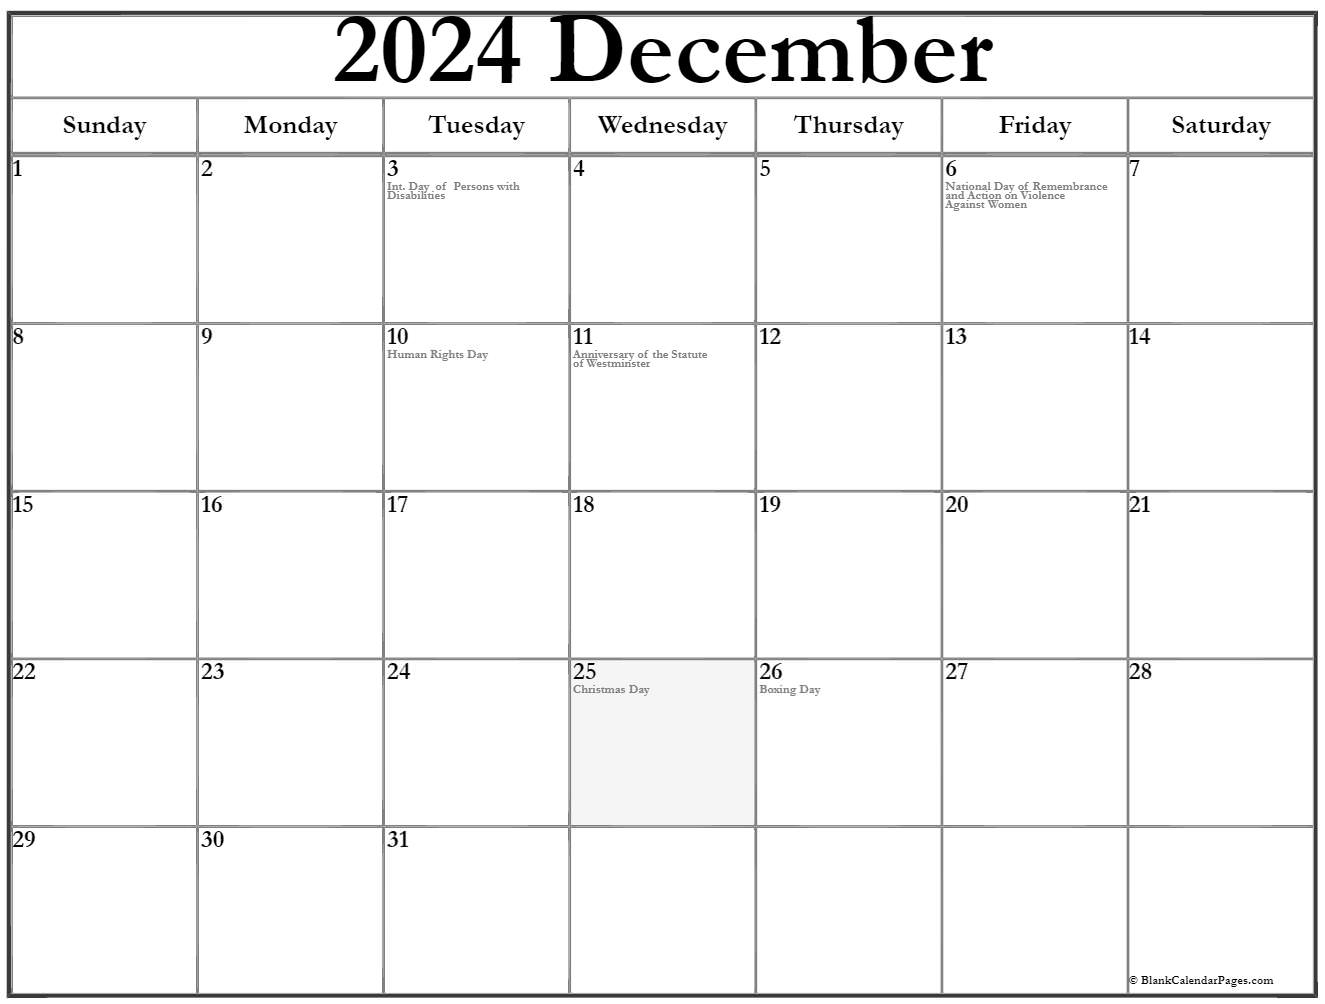 December 2019 Calendar Canada 2018 Calendar Canada 2018 Calendar Year At A Glance Canada Nqgrwj Efwich